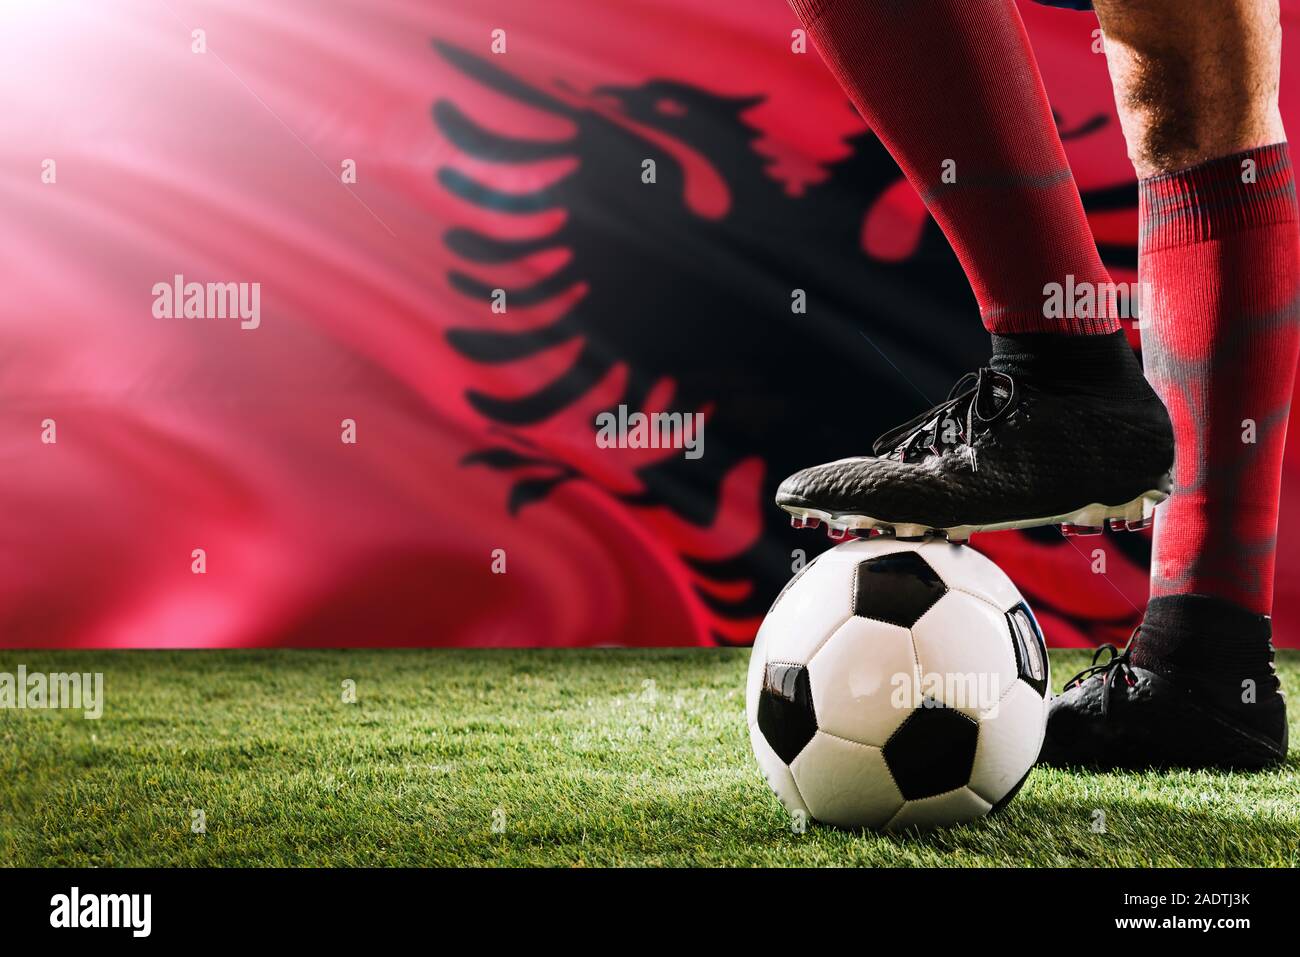 Nahaufnahme Beine von Albanien Fußball Team Player in roten Socken, Schuhe  auf Fußball im Free Kick oder elfmeterpunkt Spielen auf Gras  Stockfotografie - Alamy